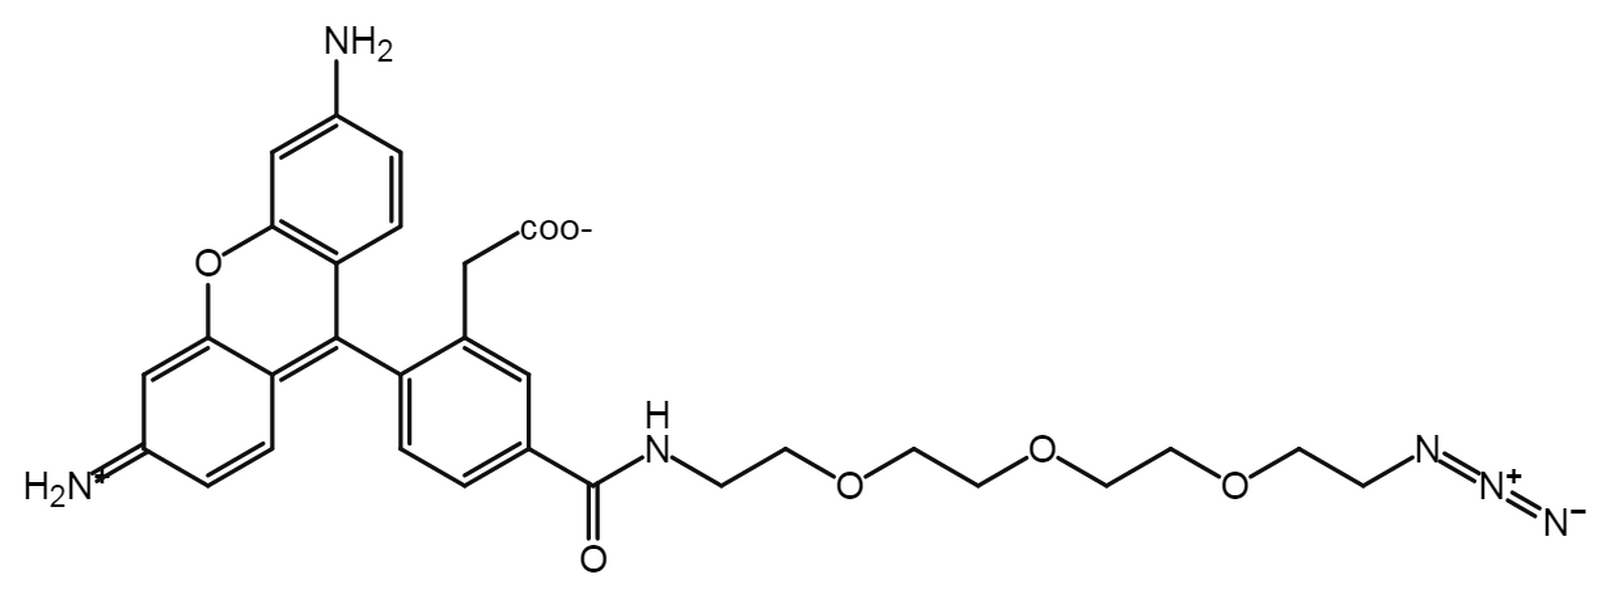 Carboxyrhodamine 110-PEG3-Azide